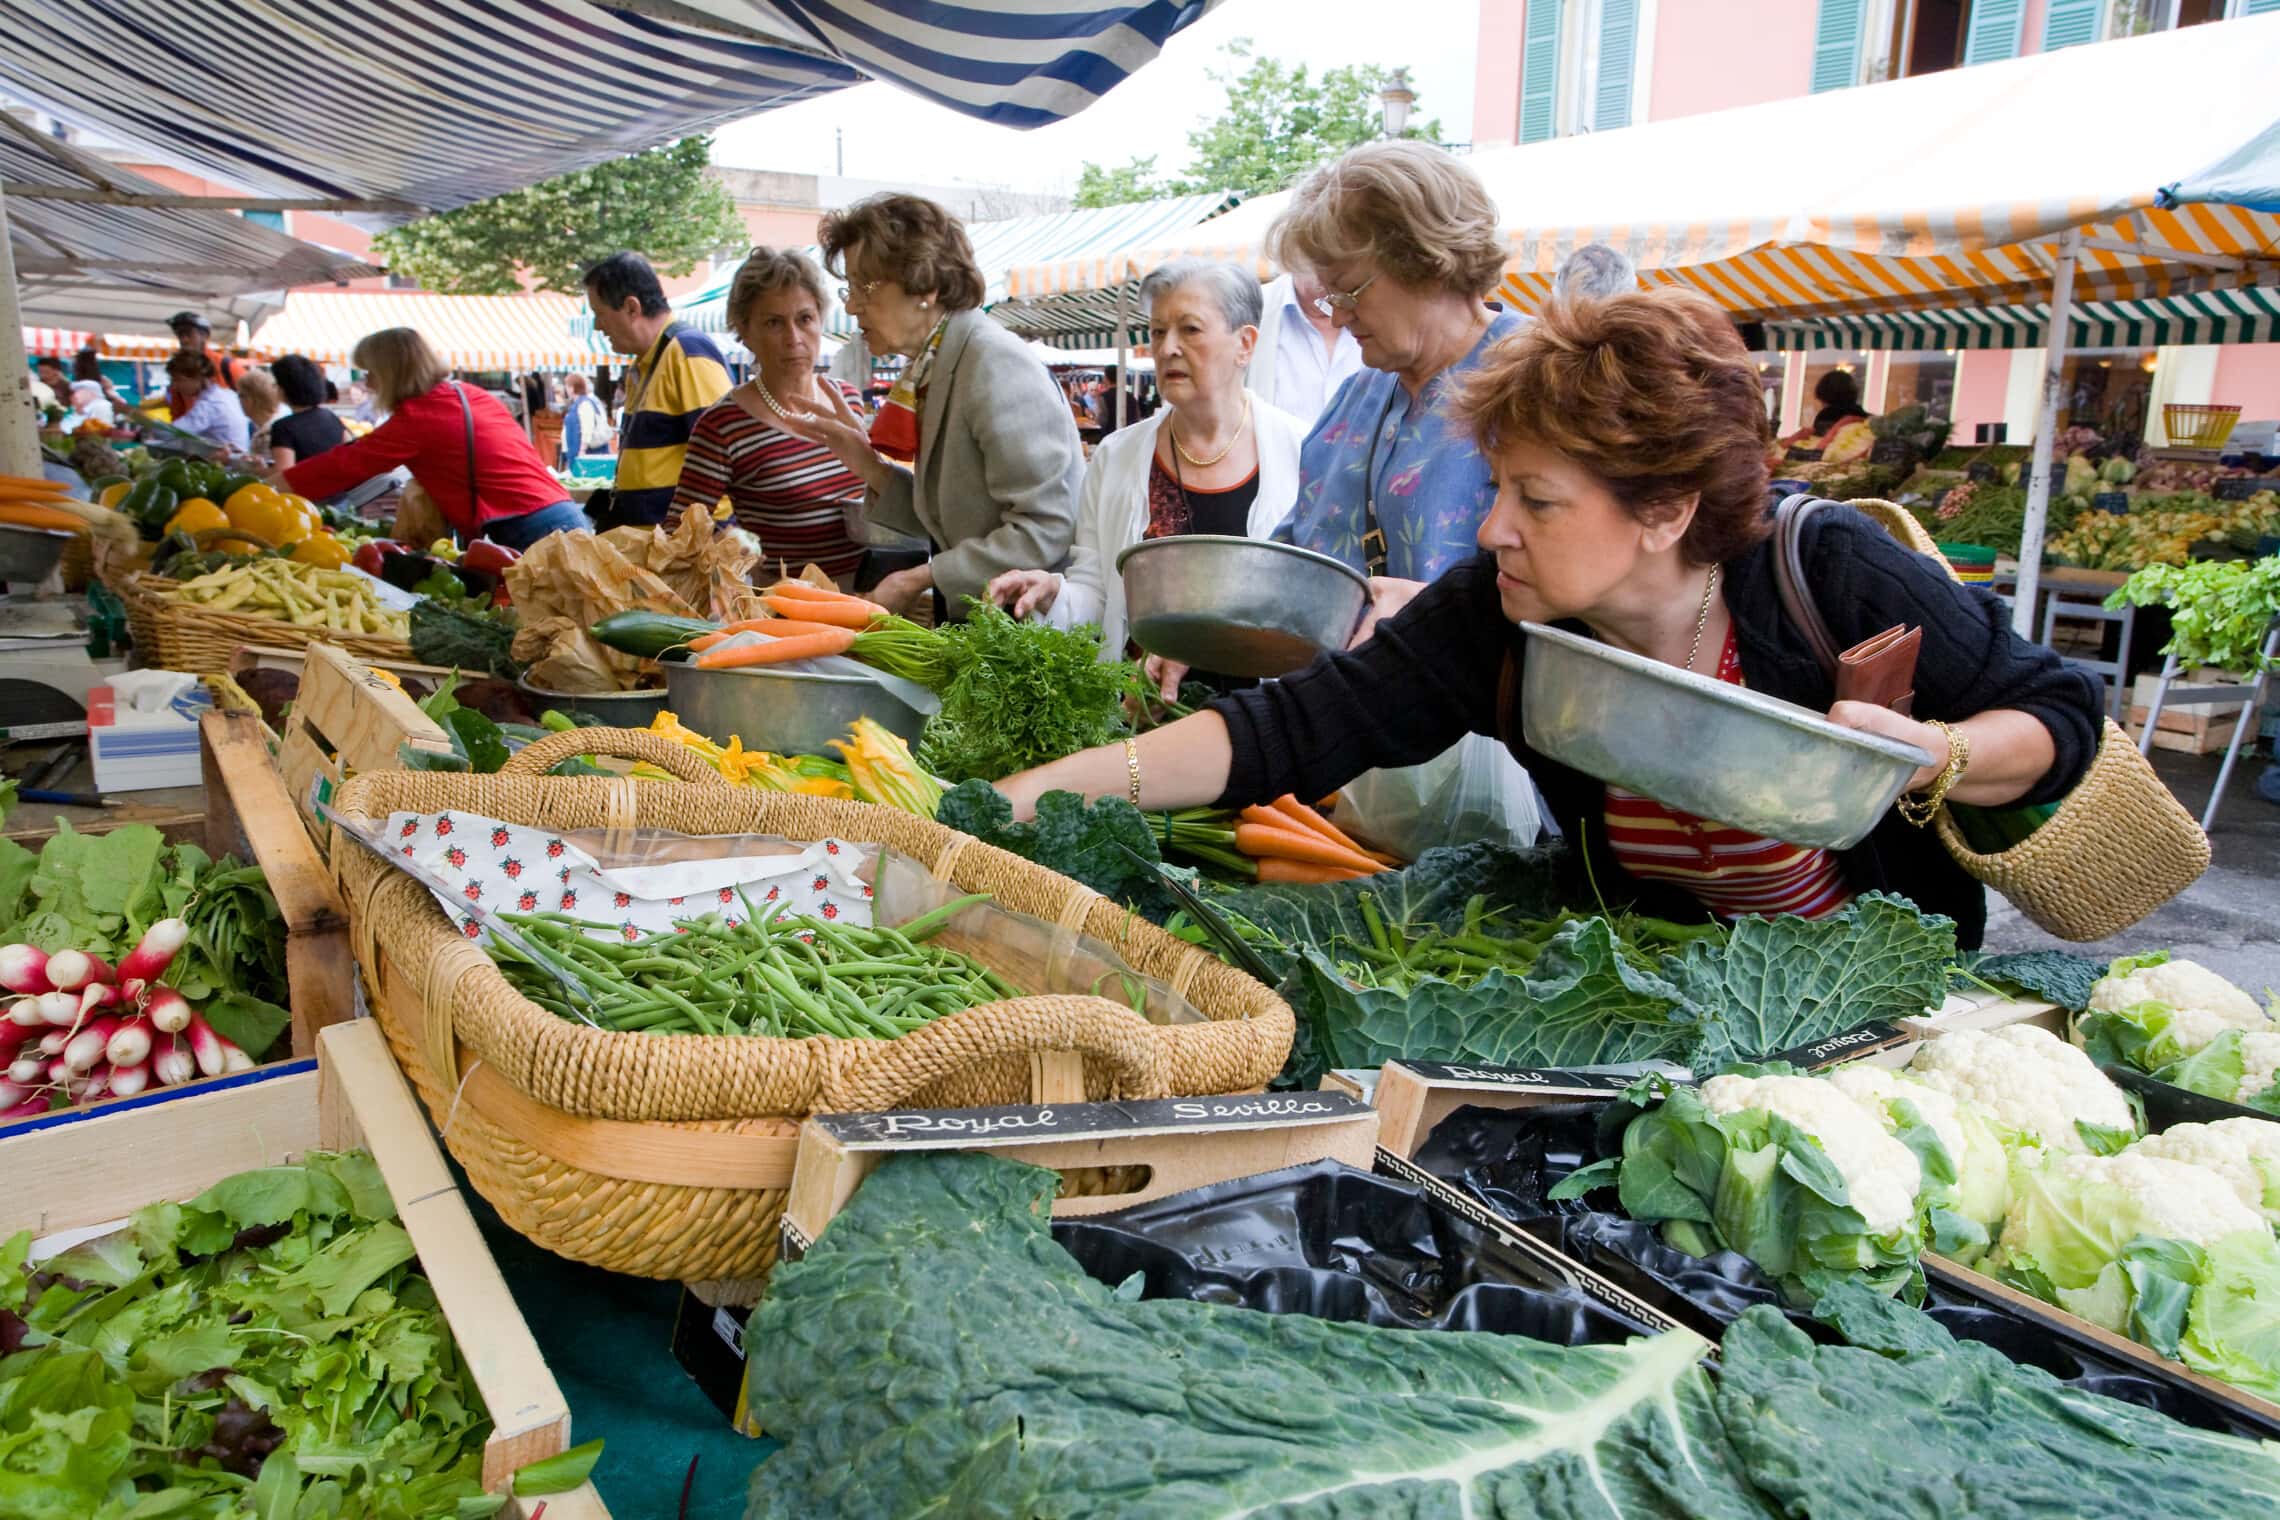 דוכני ירקות בשוק בקור סלייה בניס (צילום: Werner Dieterich / Alamy)